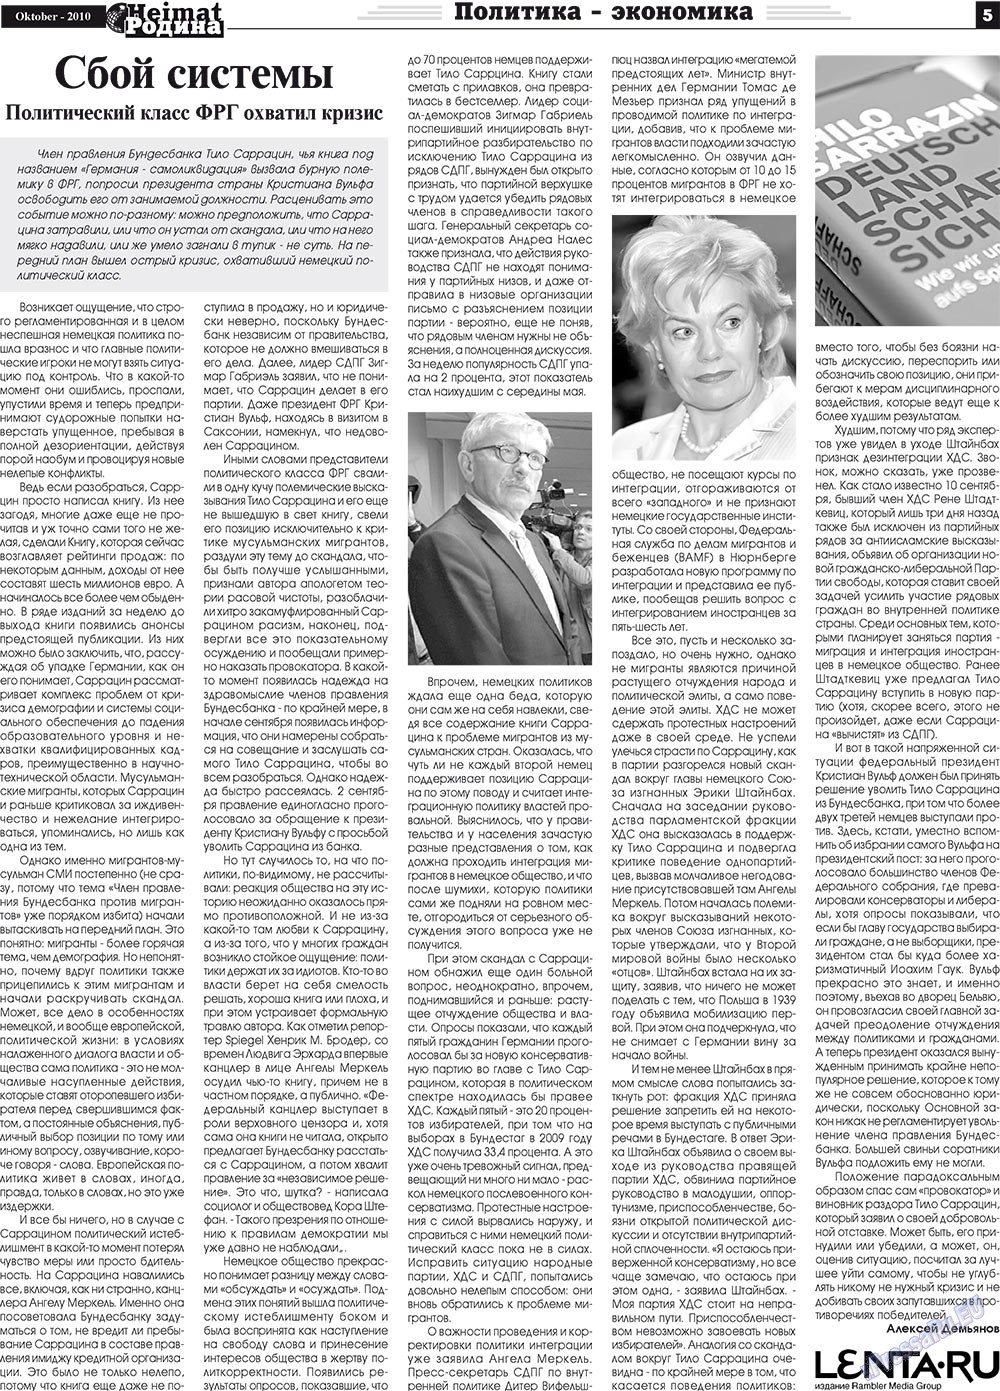 Heimat-Родина (газета). 2010 год, номер 10, стр. 5